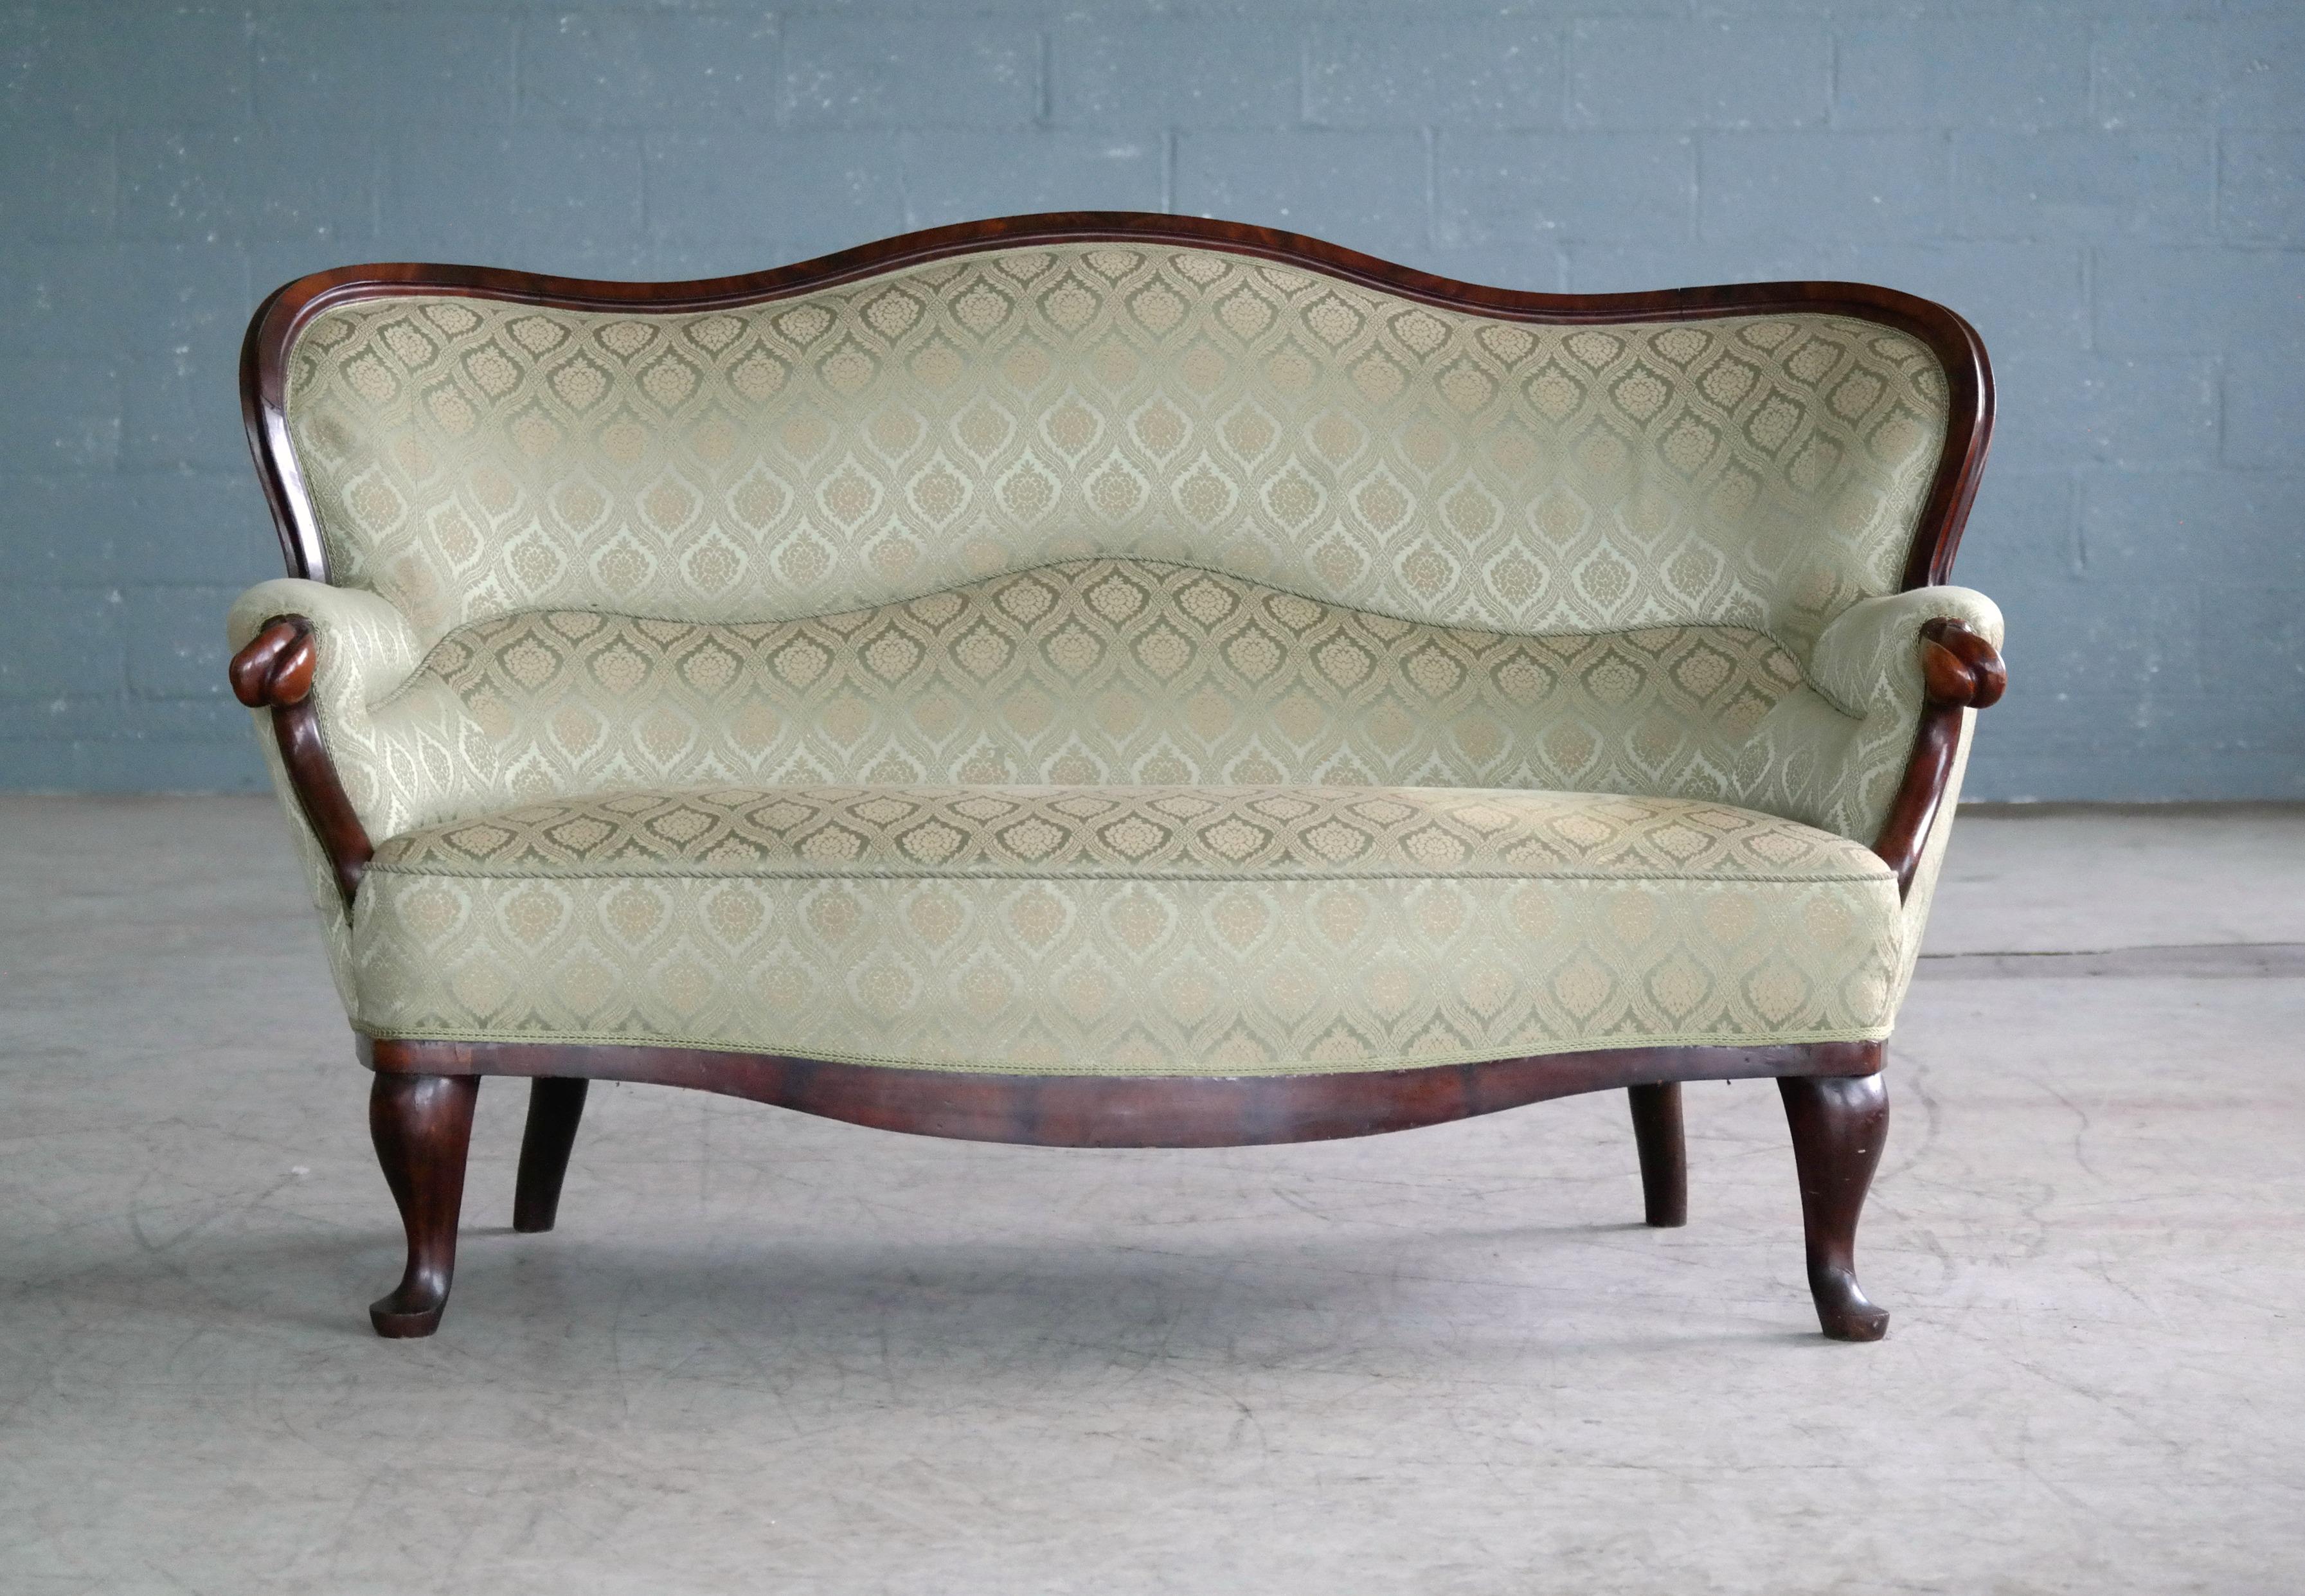 Elegantes Sofa im Stil des Rokoko-Revivals aus geschnitztem Mahagoni, hergestellt in Dänemark in den 1860er Jahren. Stabil und bequem mit nur kleinen Schrammen und Dellen am Holzrahmen und den Beinen. Der Stoff weist einige Verschmutzungen auf und